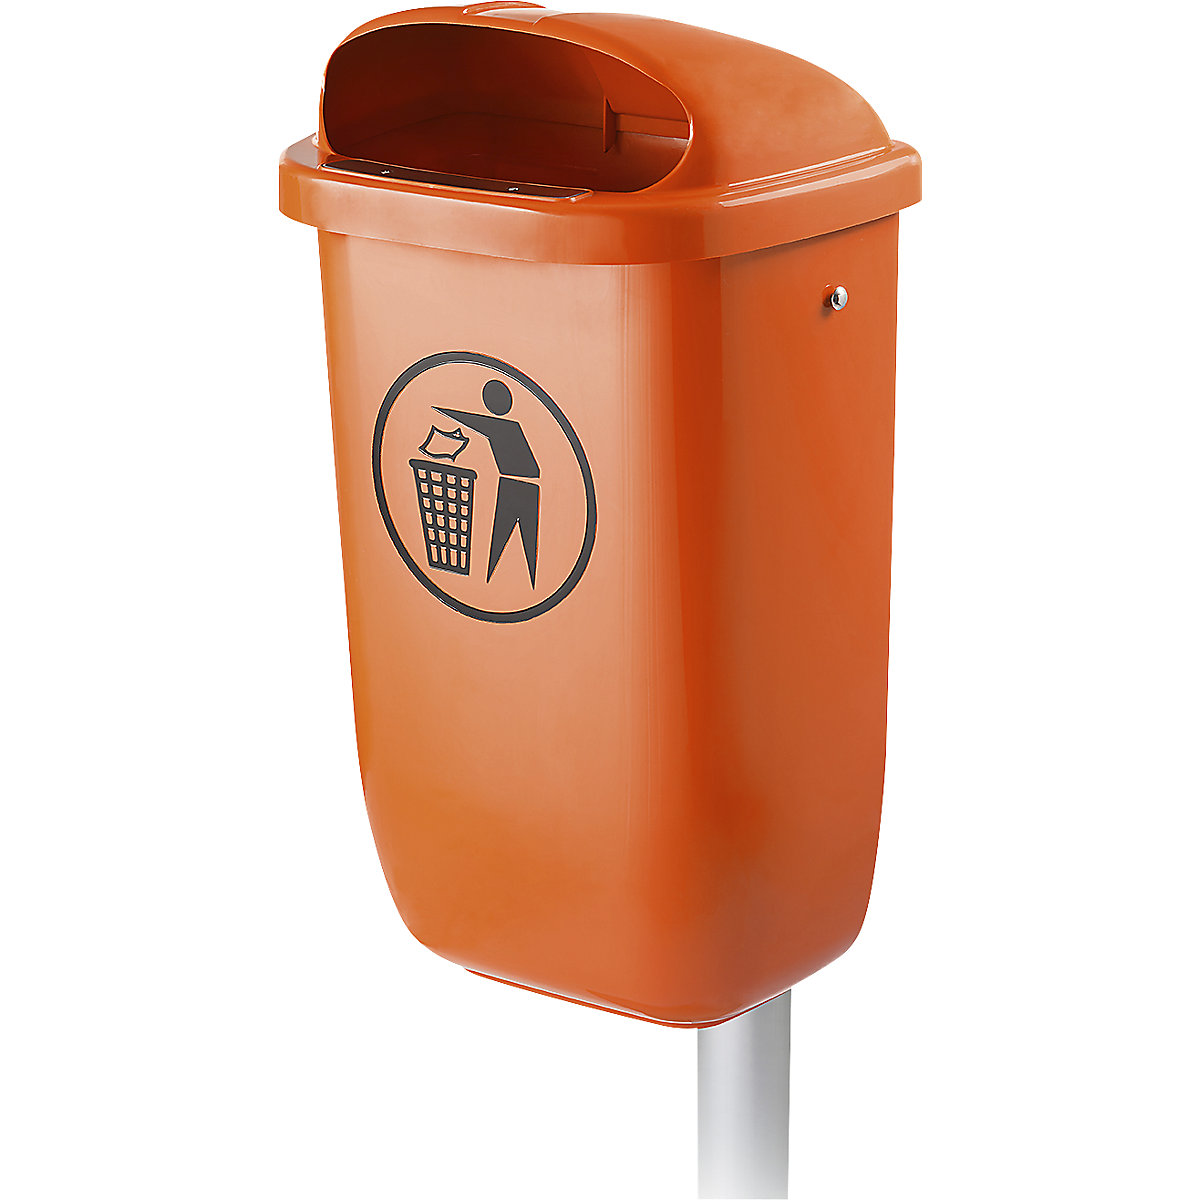 Abfallbehälter aus Kunststoff, mit Pfosten, Volumen 50 l, orange-3